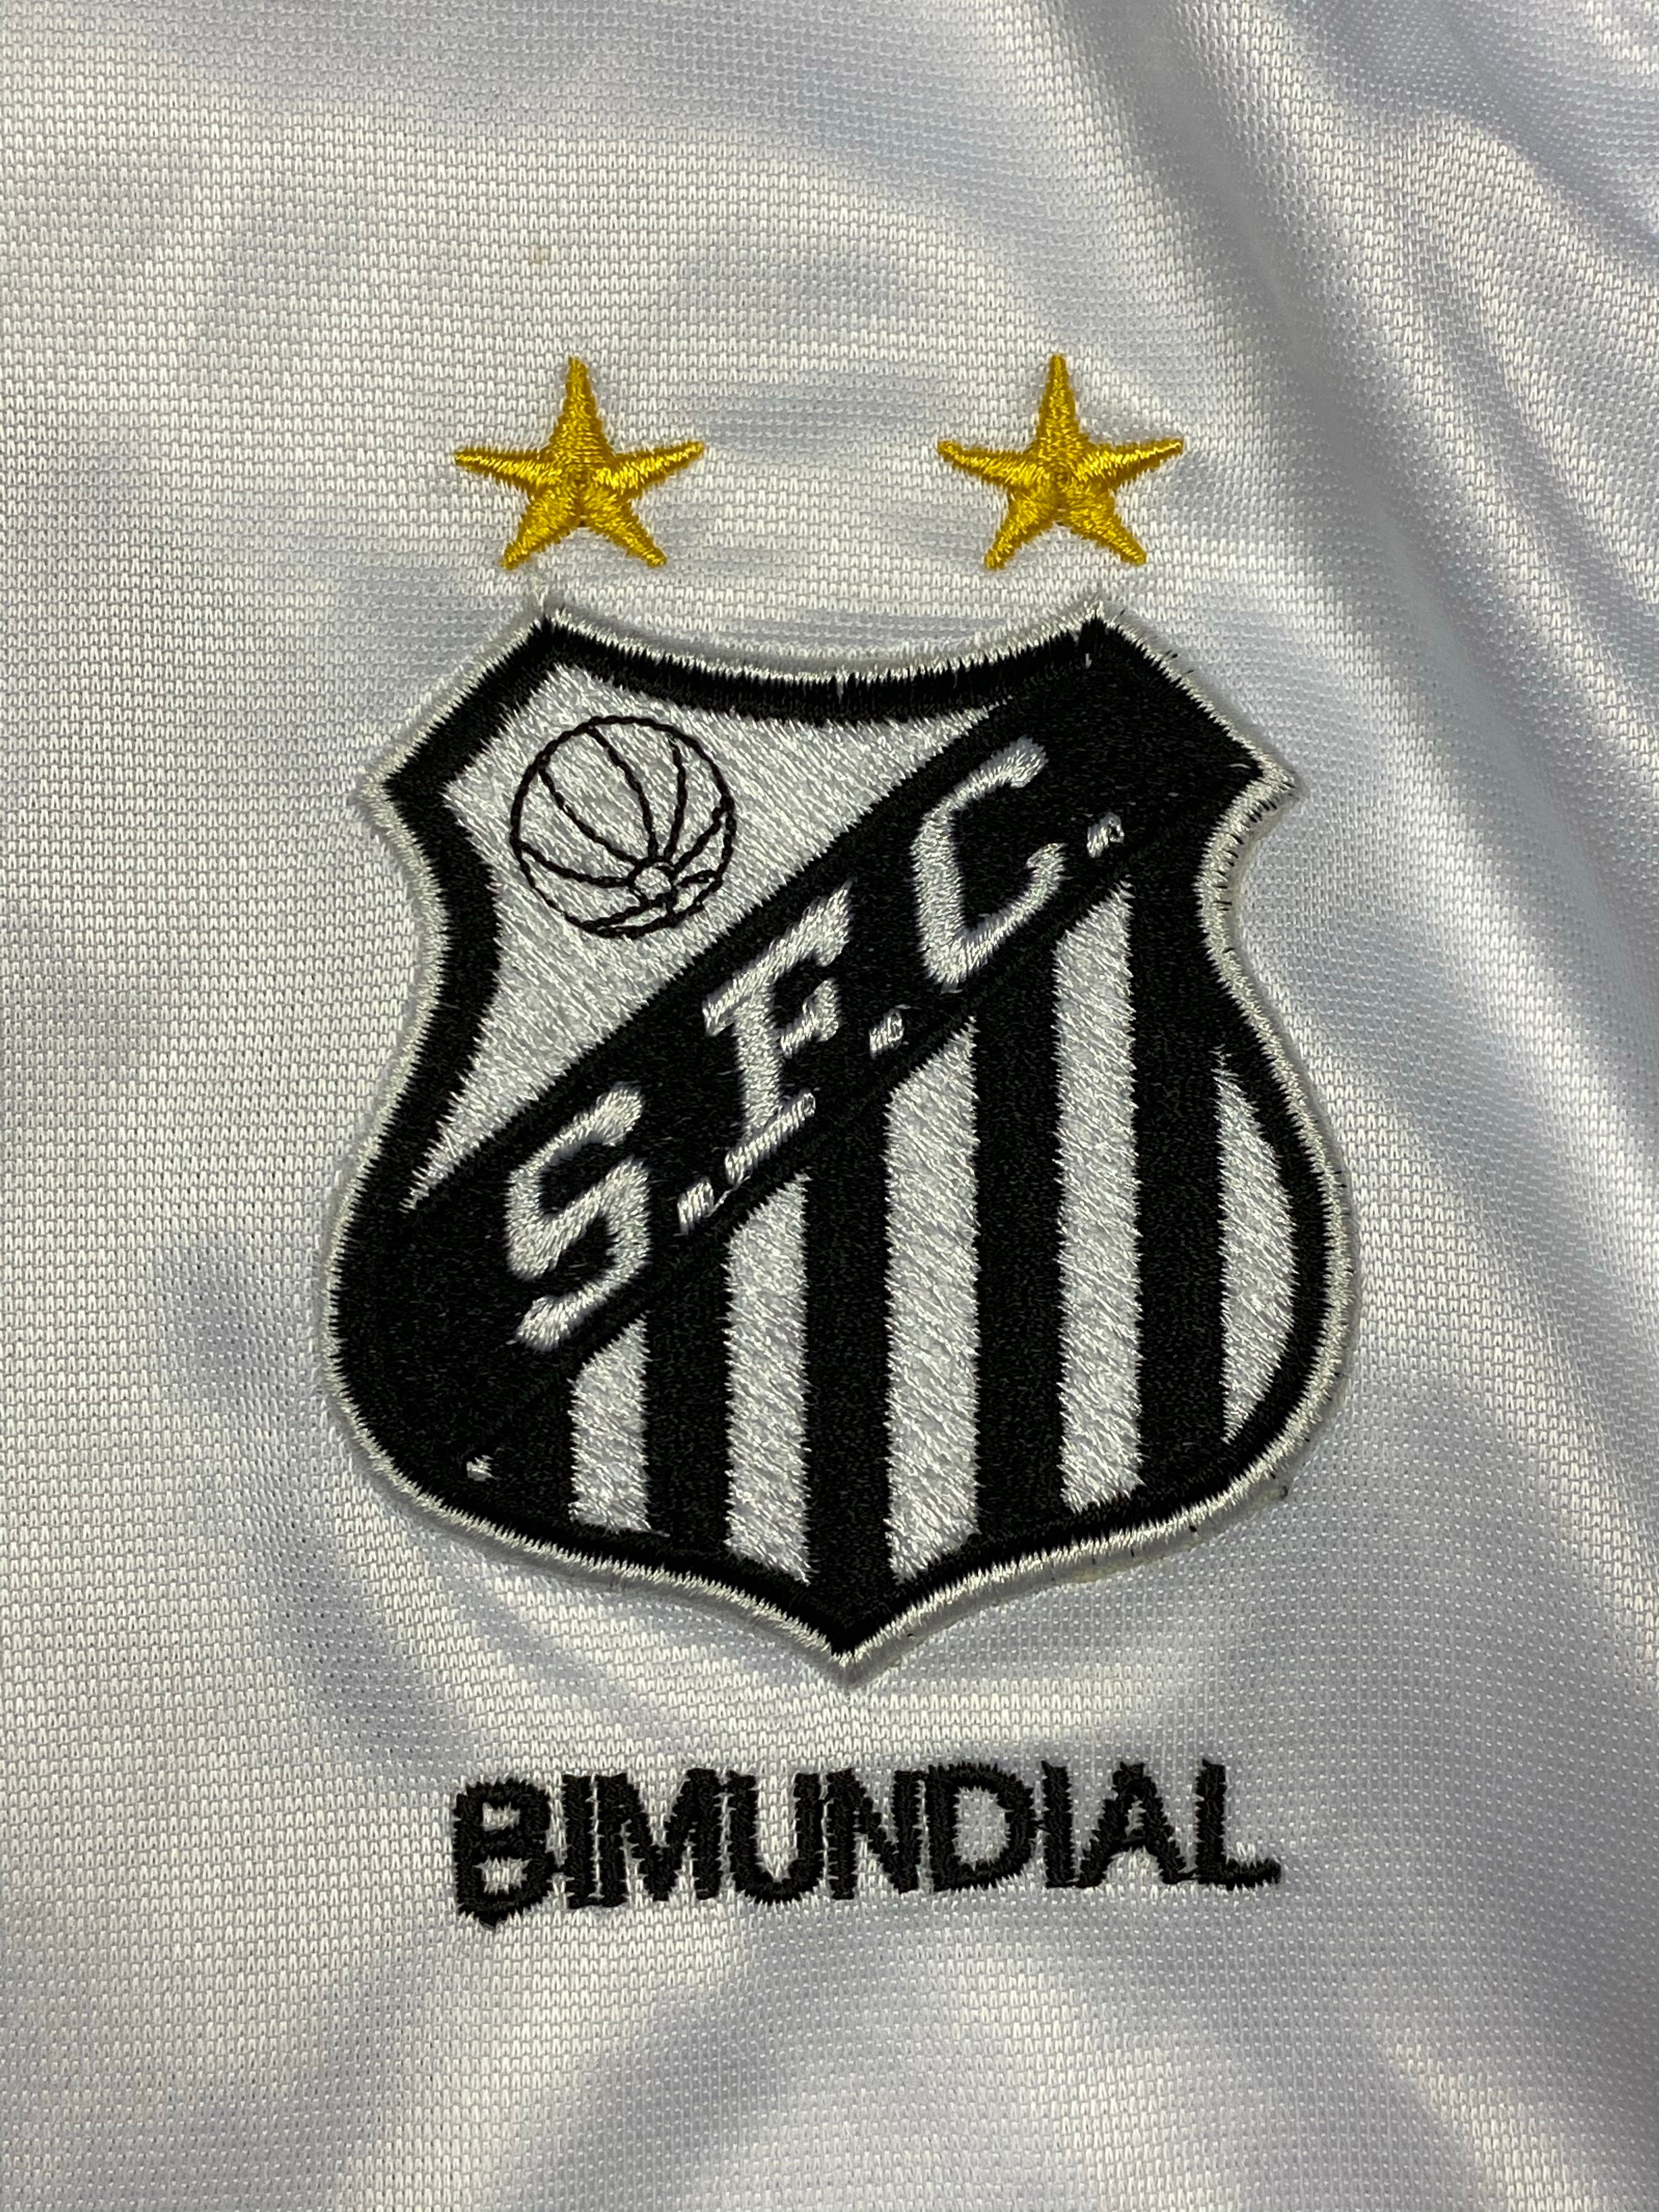 2001 Camiseta local del Santos #10 (L) 9/10 